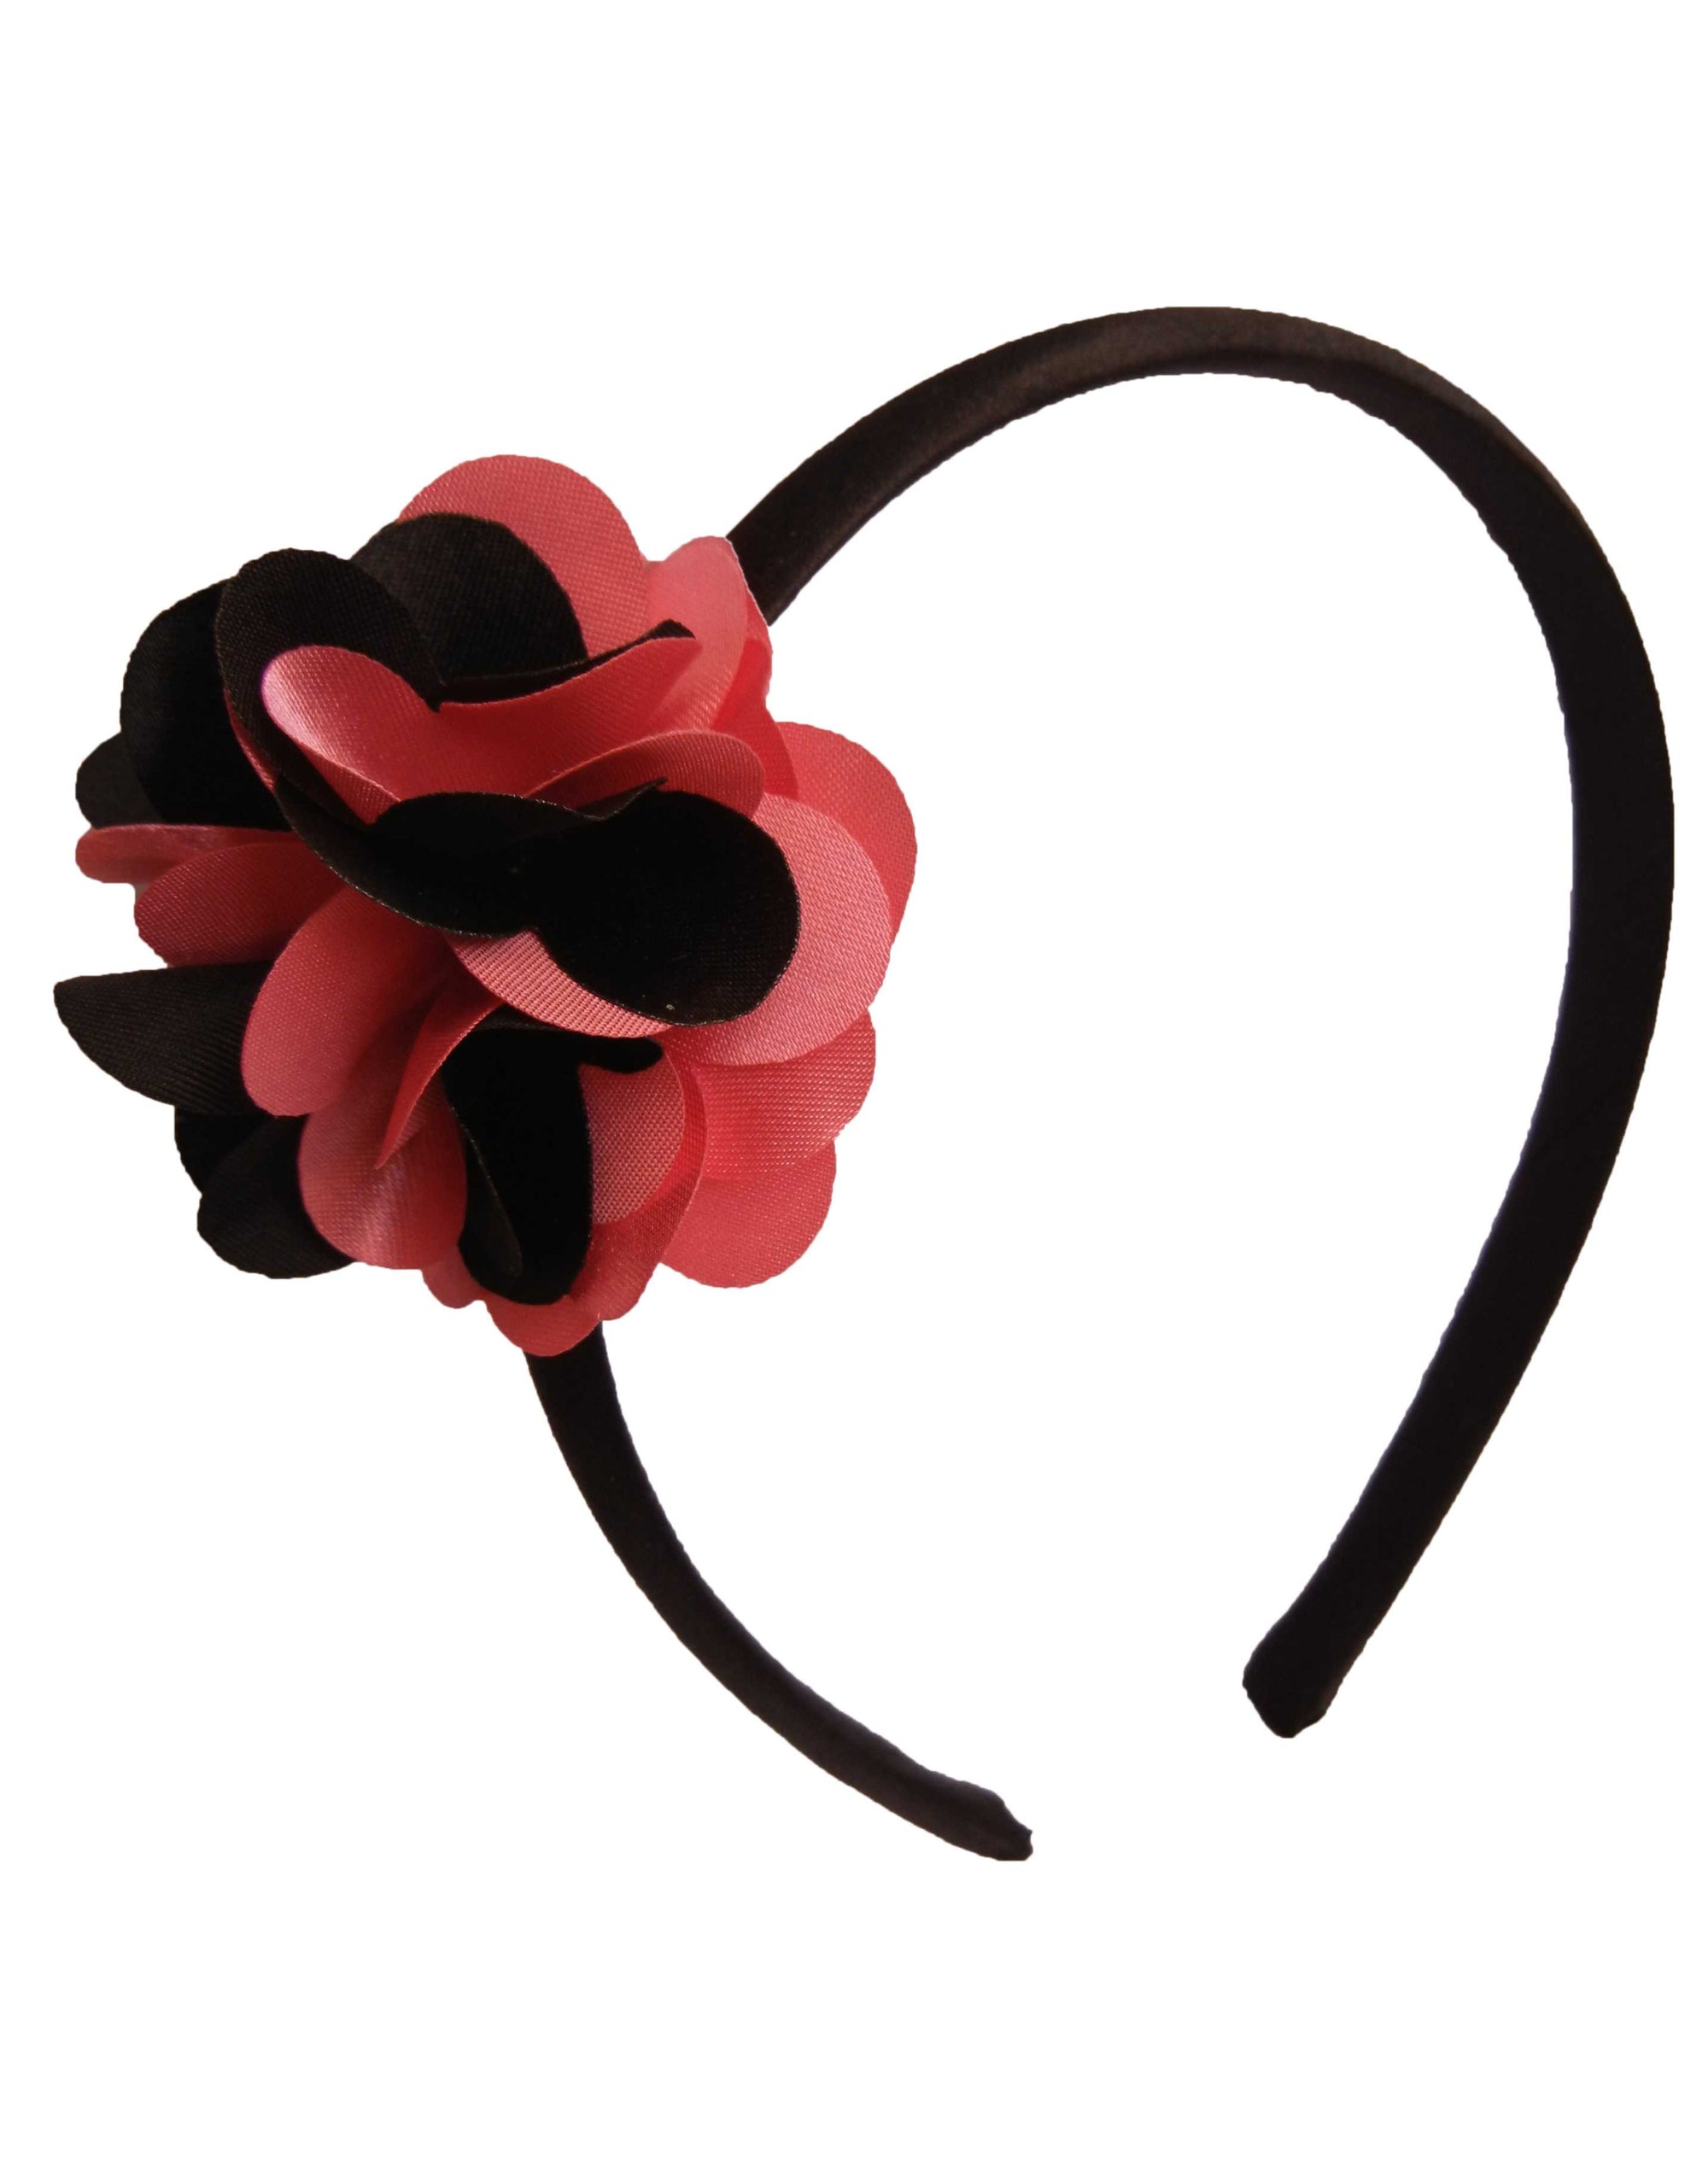 Black & Onpink flower on Blk Satin hair bands for girls